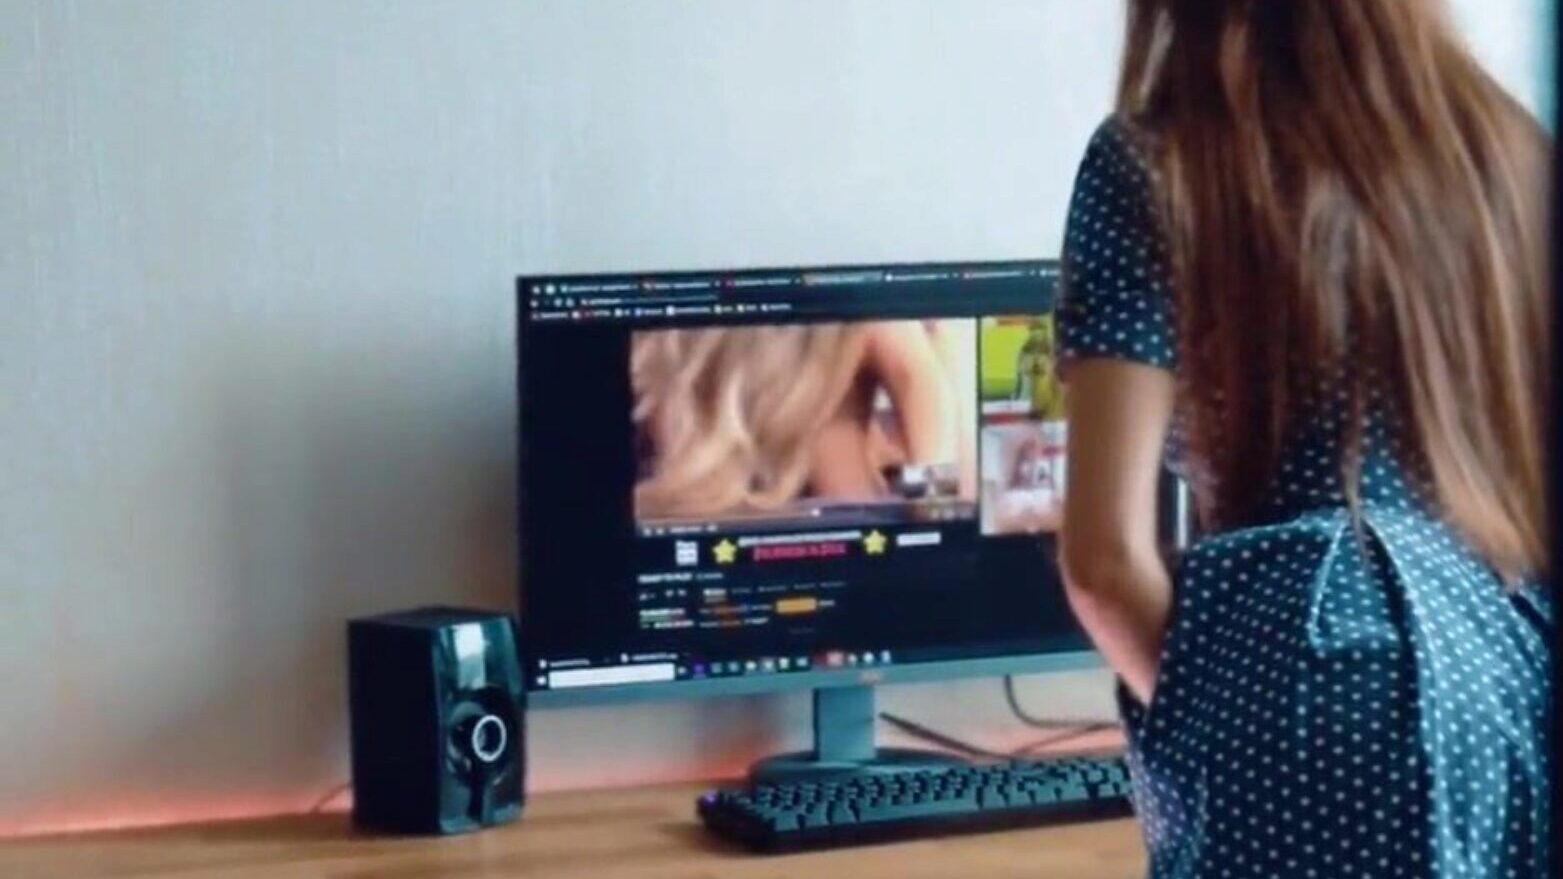 Schulmädchen beim Anschauen von Pornos erwischt wird ins Gesicht Schulmädchen beim Anschauen von Pornos beim Laden erwischt